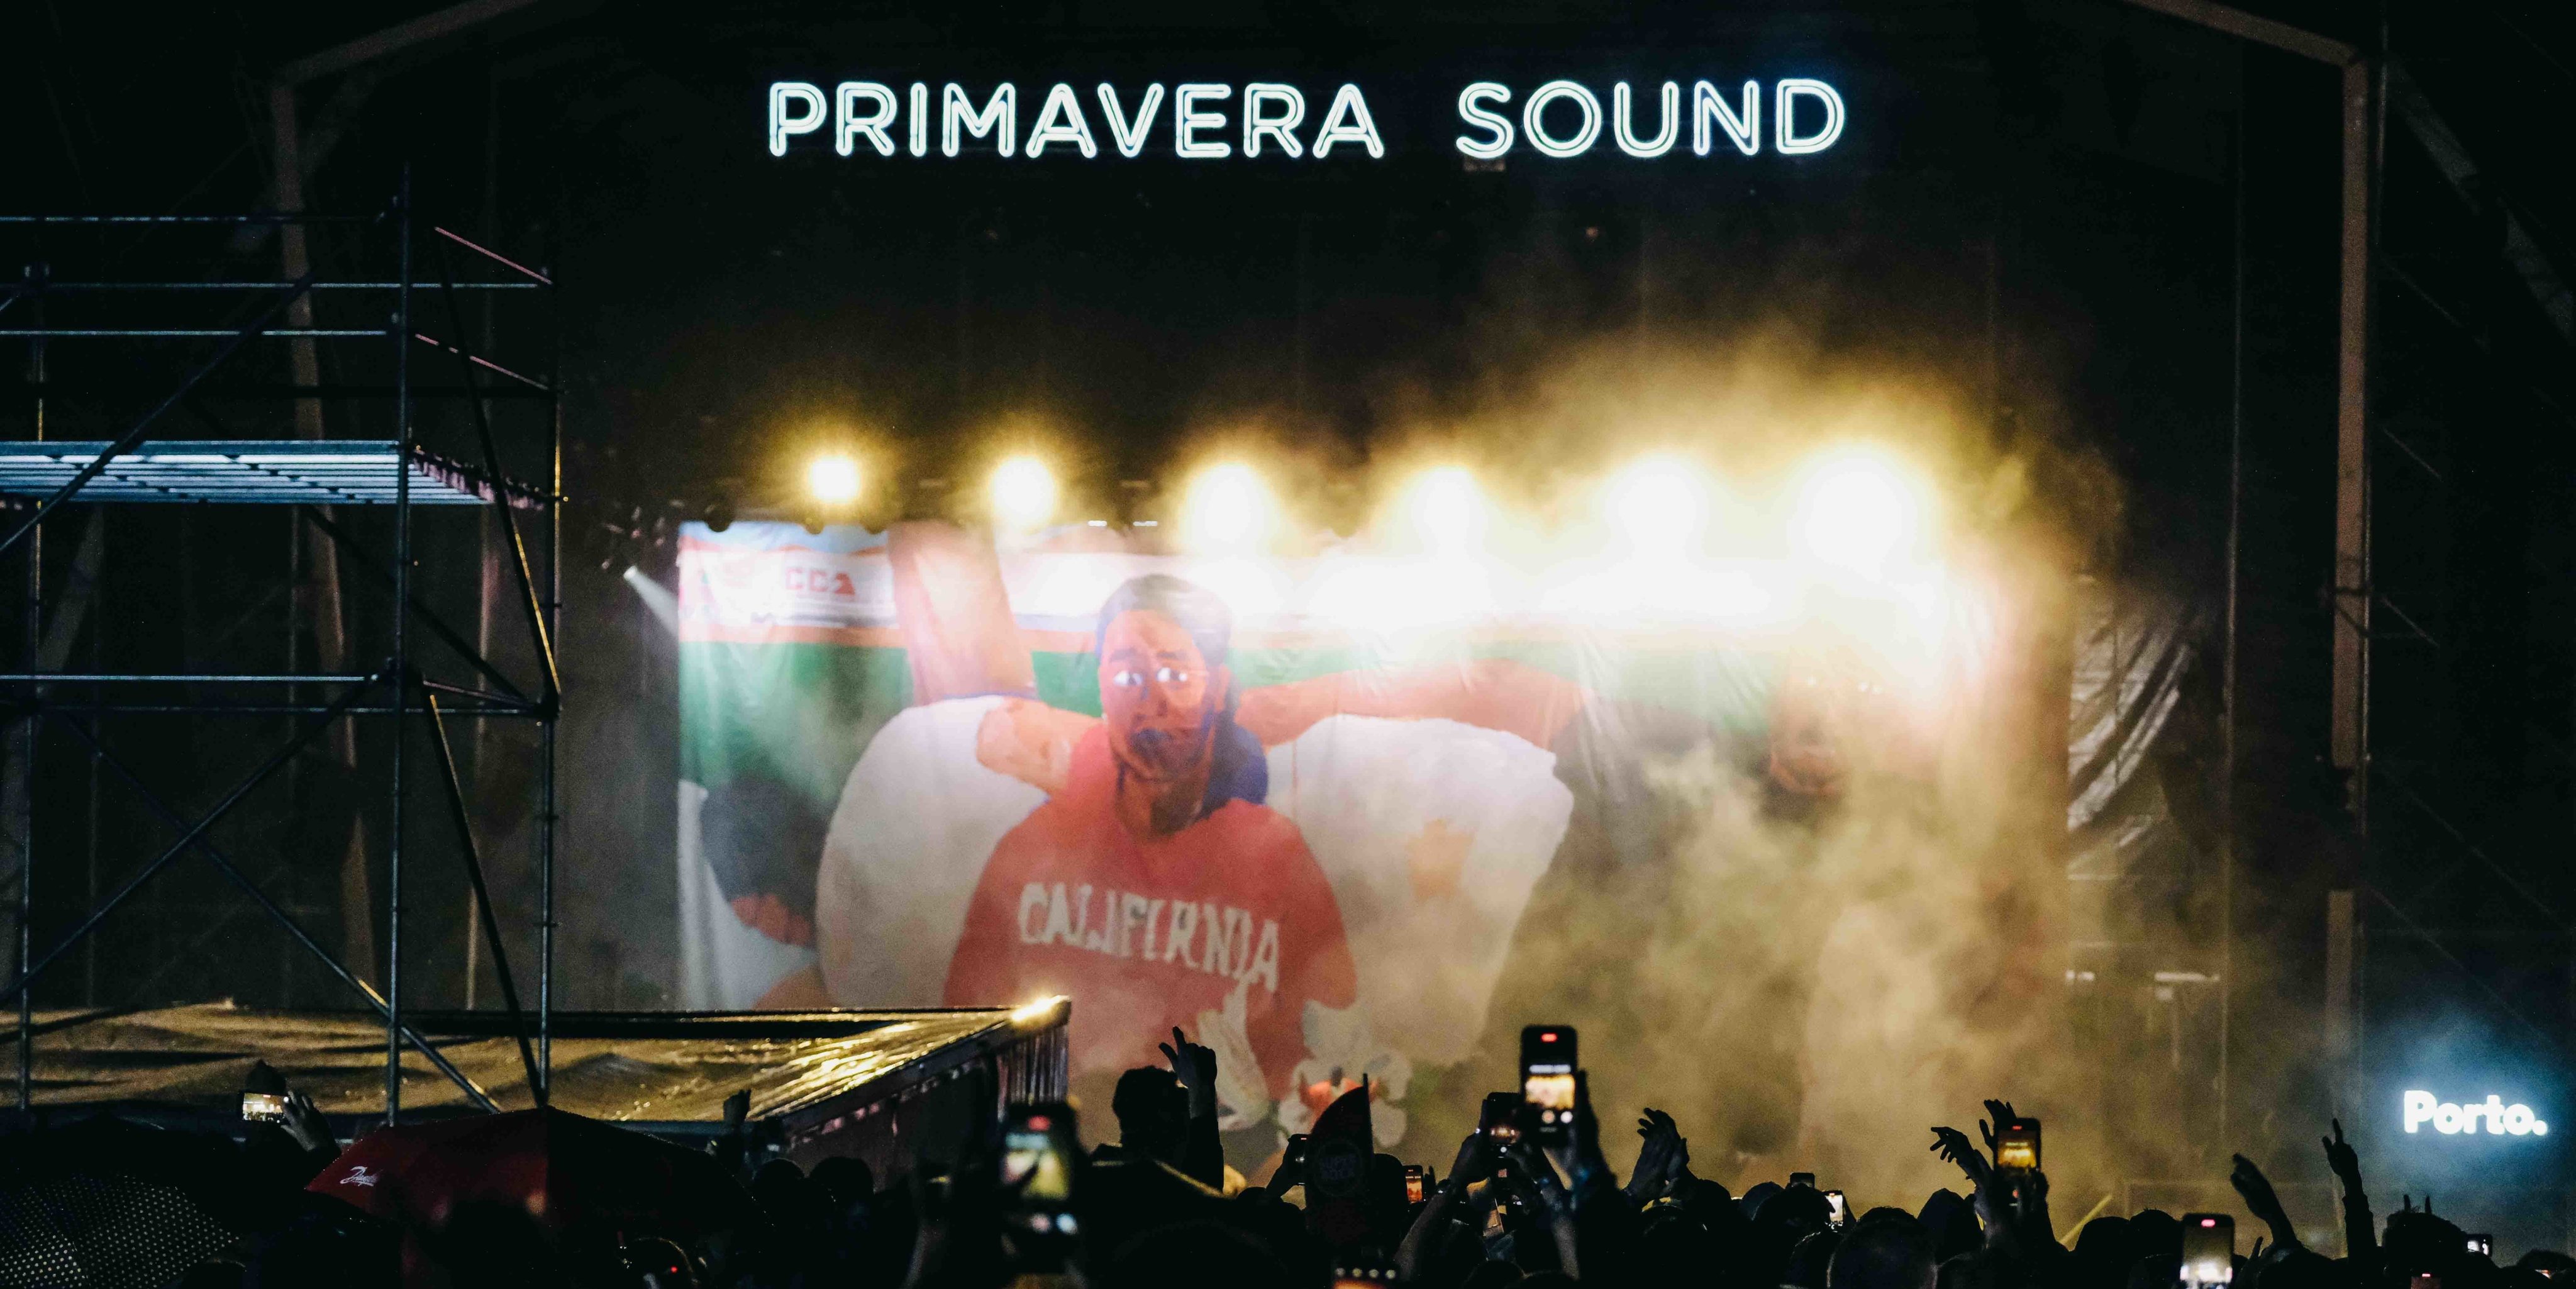 O rapper norte-americano esteve no festival Primavera Sound, no Porto, pela segunda vez. A primeira foi em 2014.